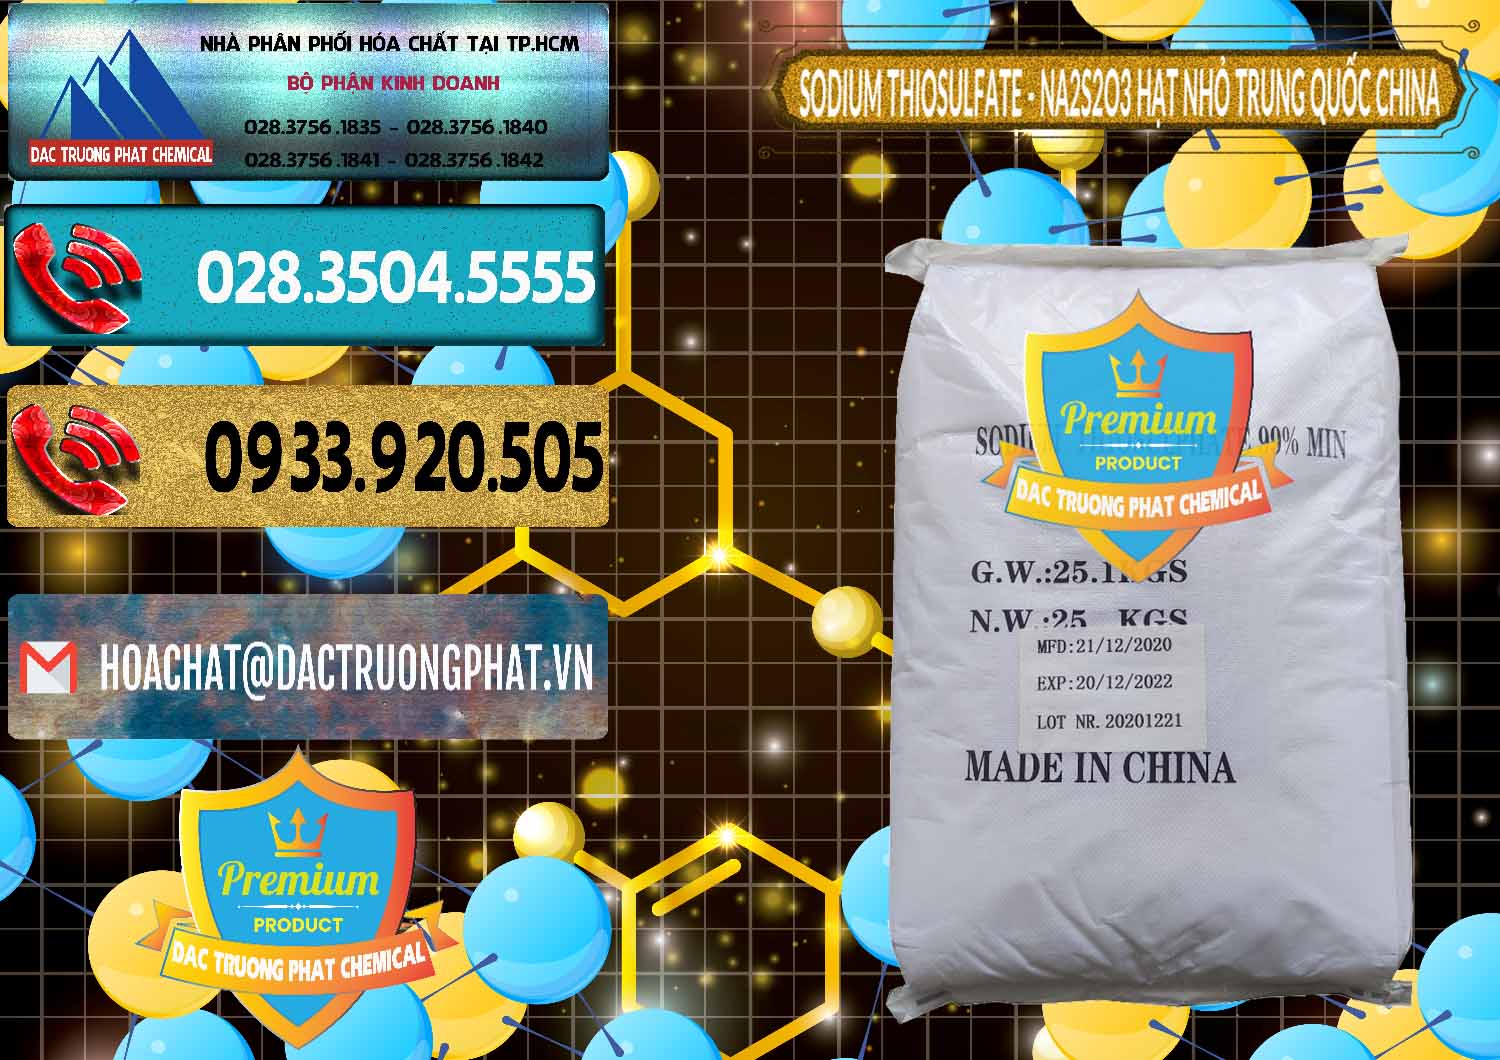 Công ty cung ứng & bán Sodium Thiosulfate - NA2S2O3 Hạt Nhỏ Trung Quốc China - 0204 - Nơi phân phối và cung cấp hóa chất tại TP.HCM - hoachatdetnhuom.com